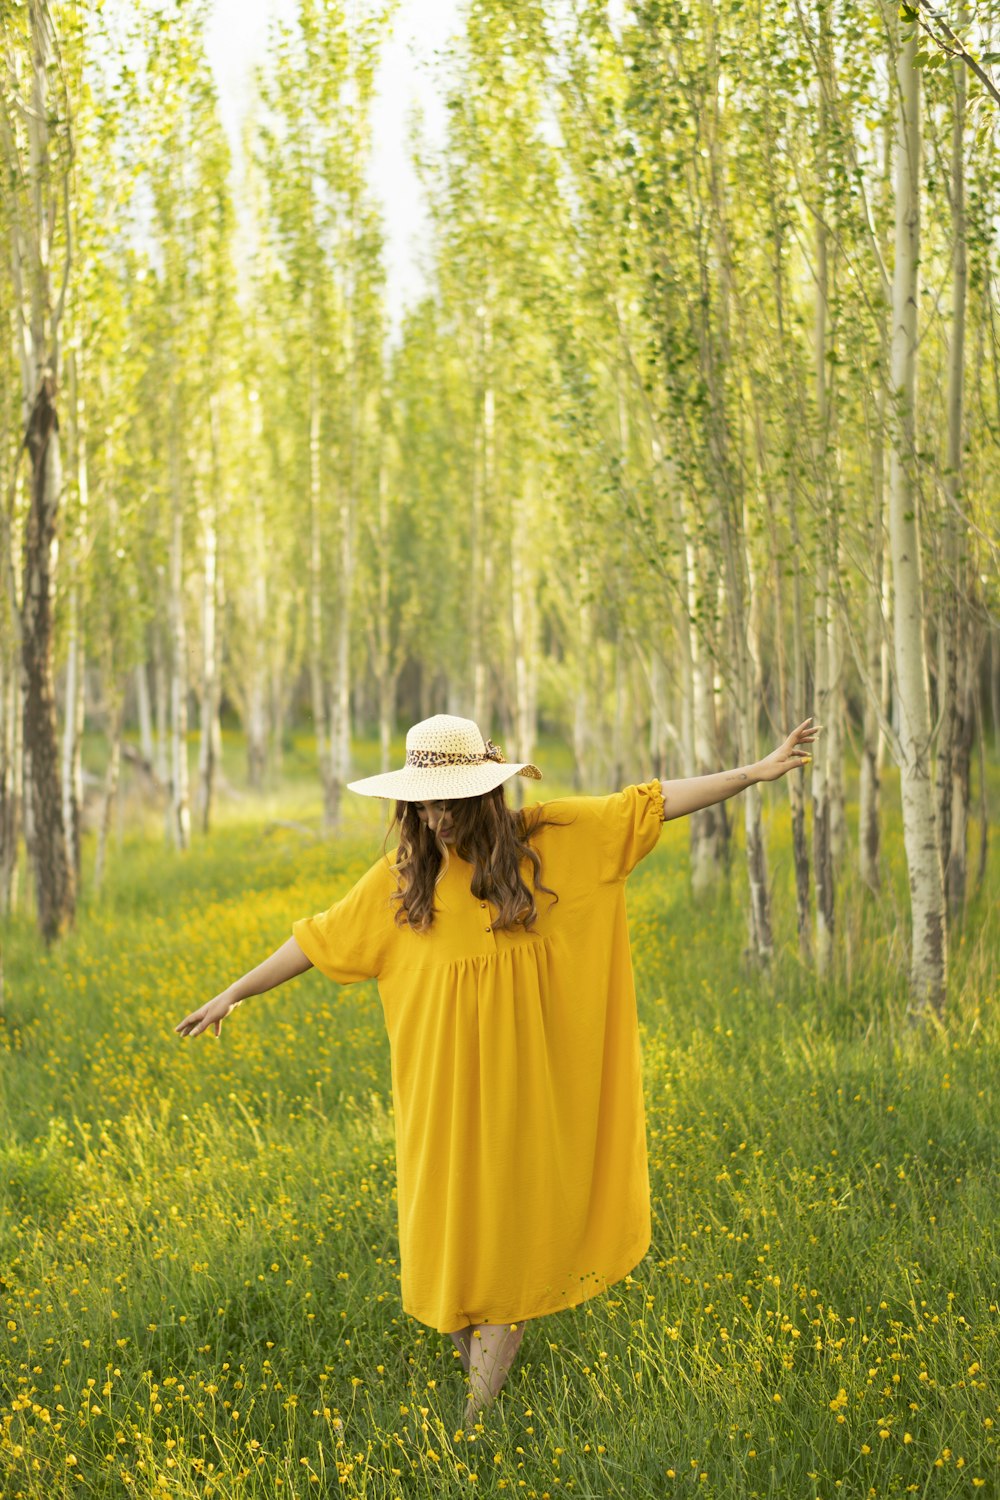 Femme en robe jaune portant un chapeau marron debout sur le champ d’herbe verte pendant la journée